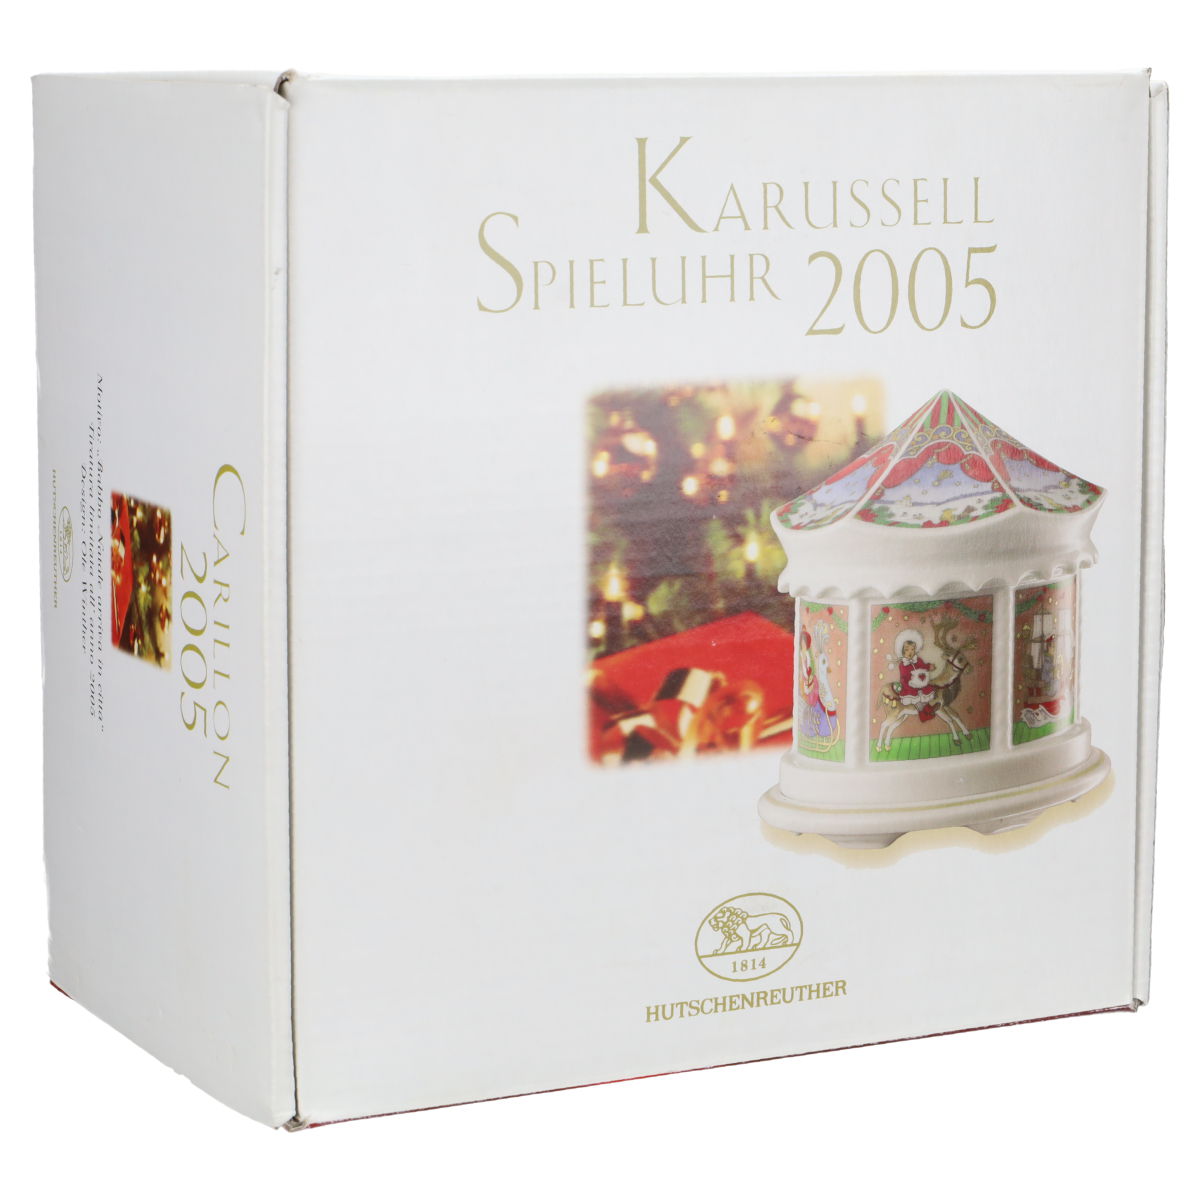 Karussell Spieluhr 2005 in OVP